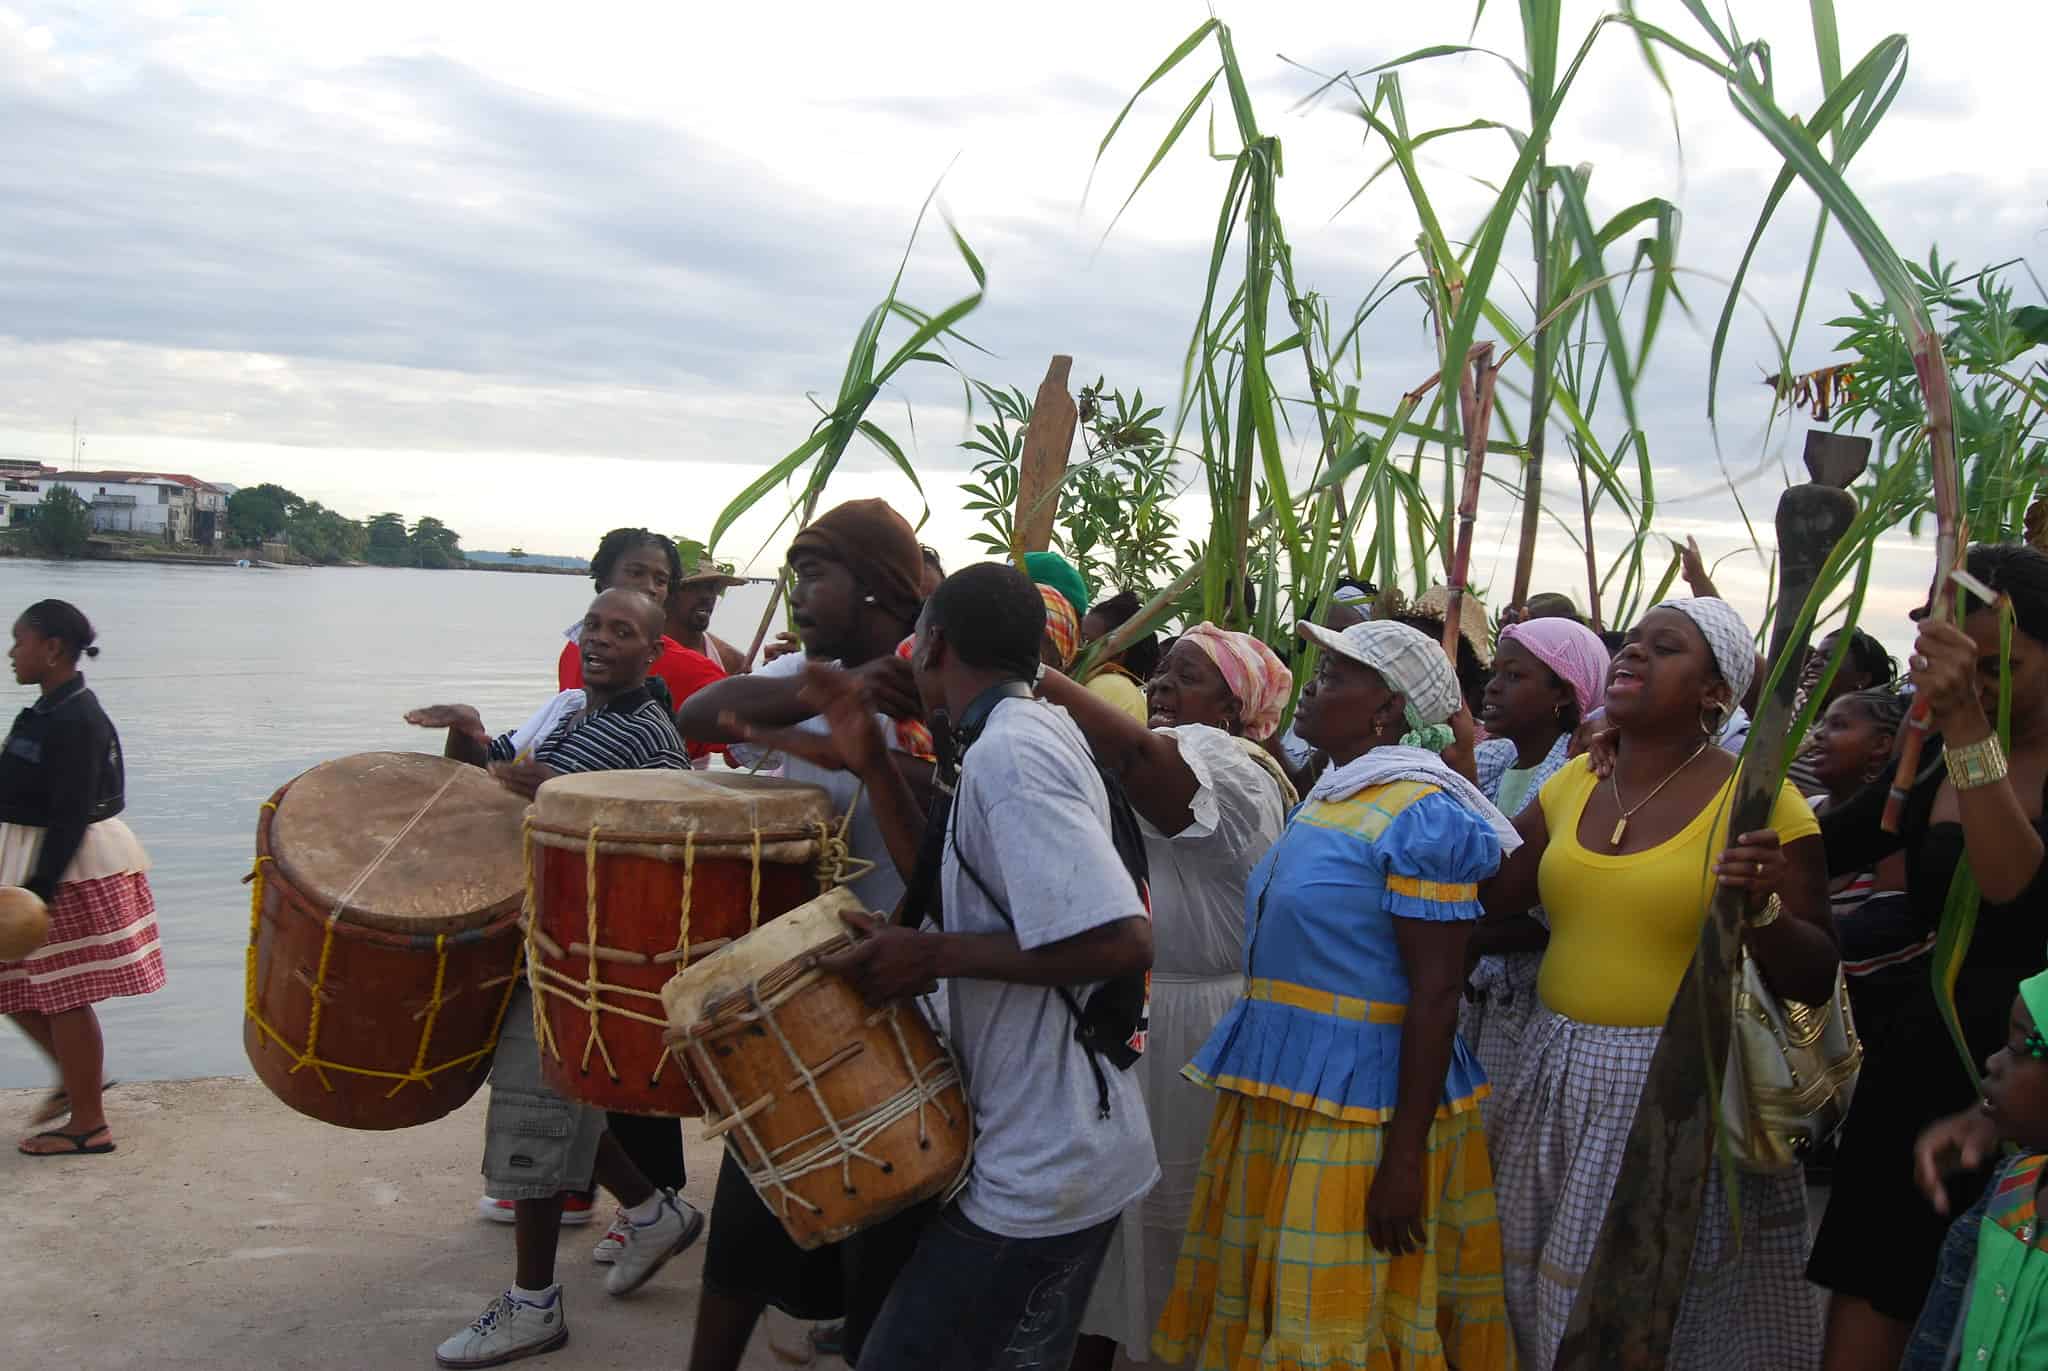 Garifuna Culture